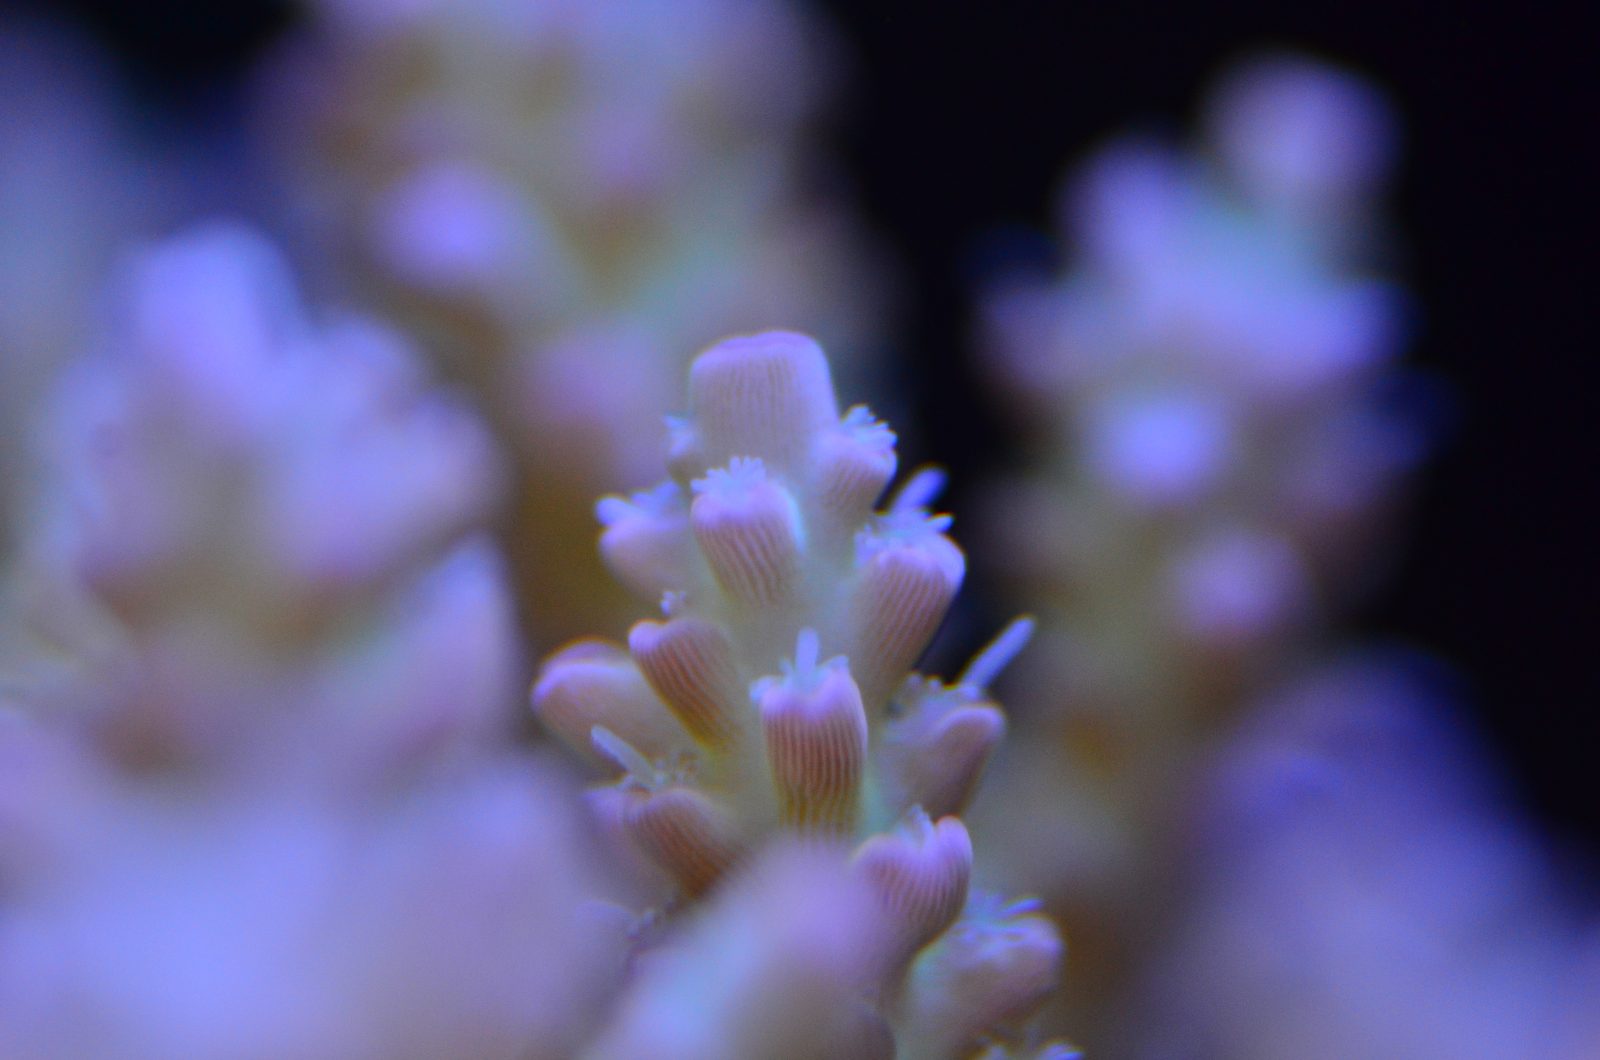 høykvalitets rev koraller belysning